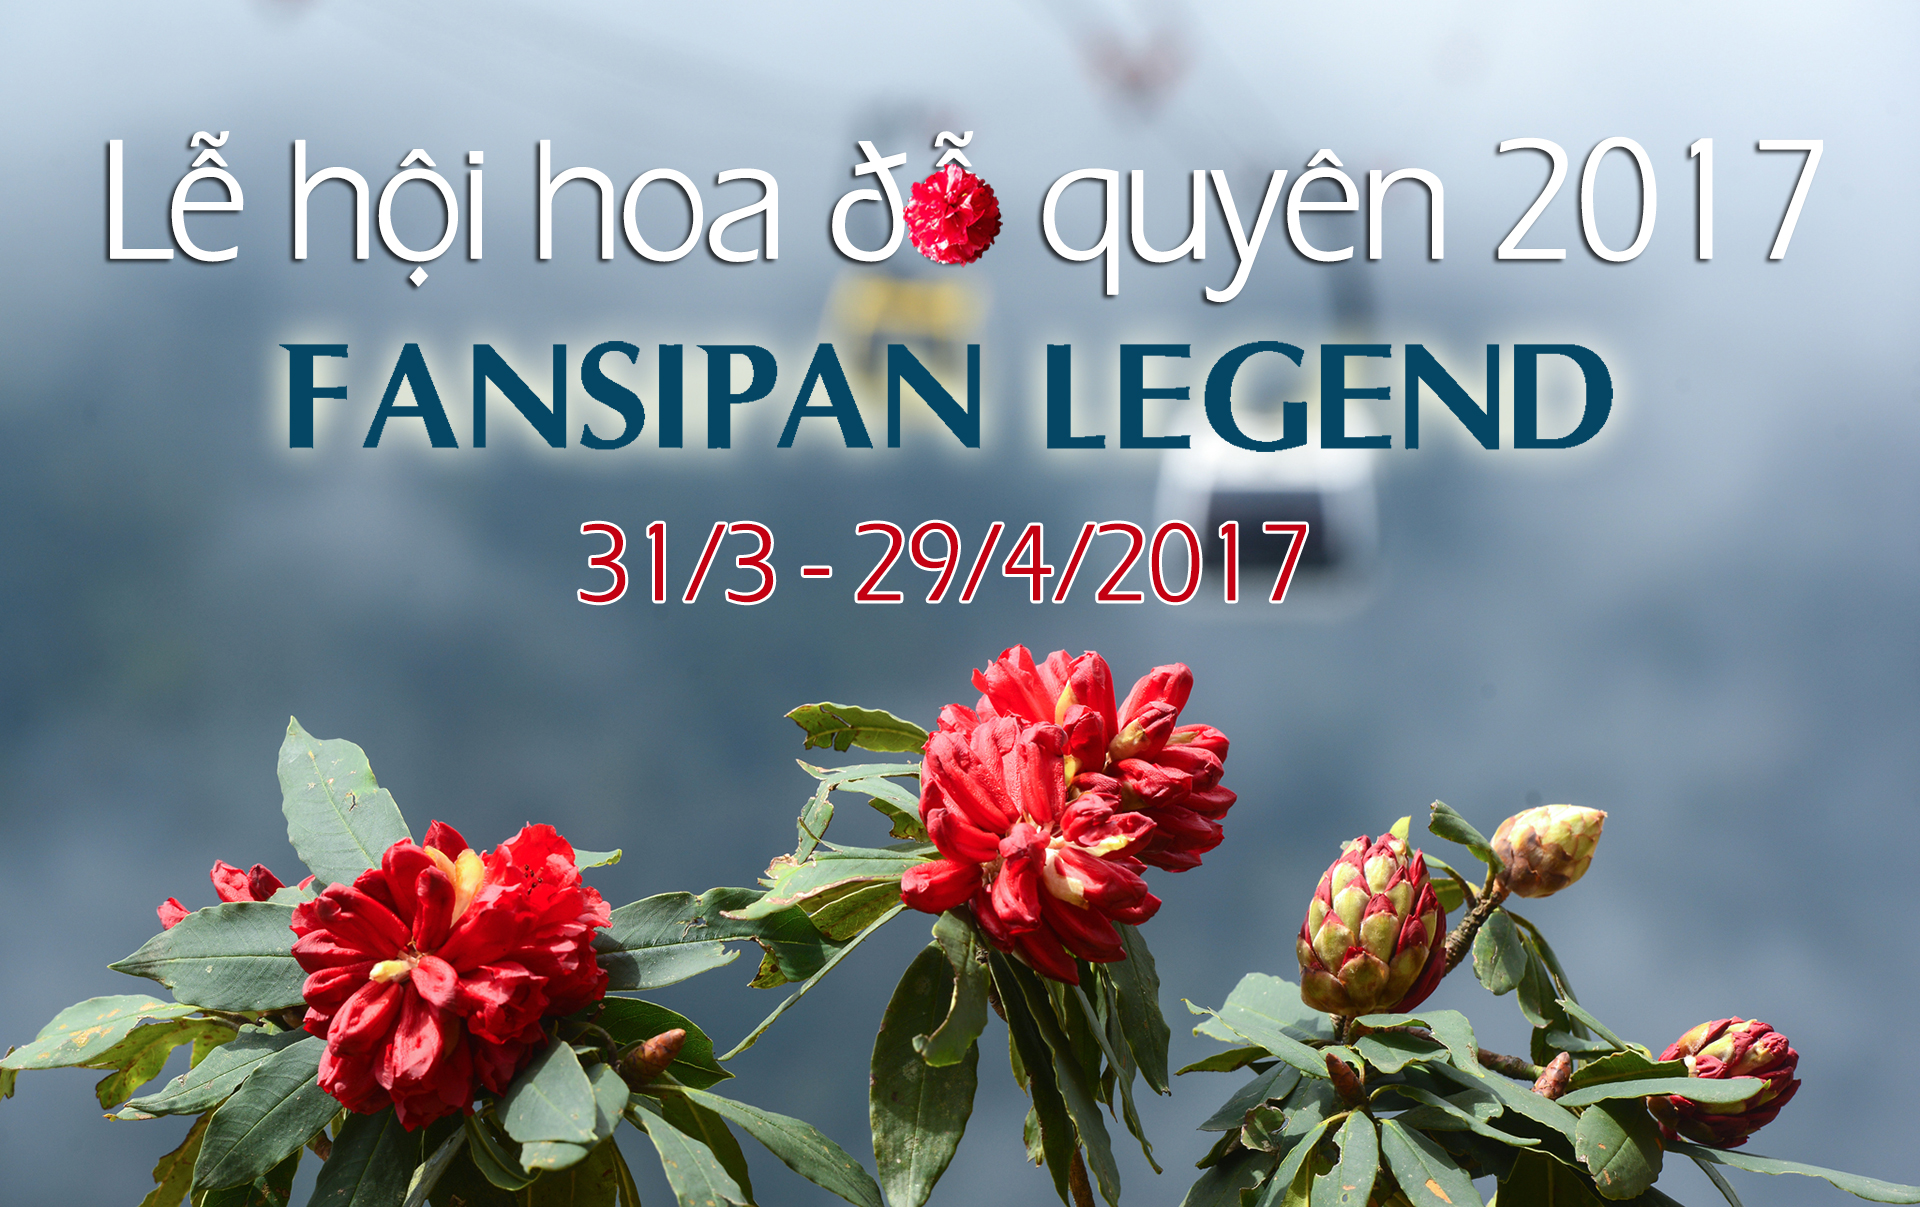 Chơi gì ở Lễ hội hoa đỗ quyên tại Fansipan Legend?